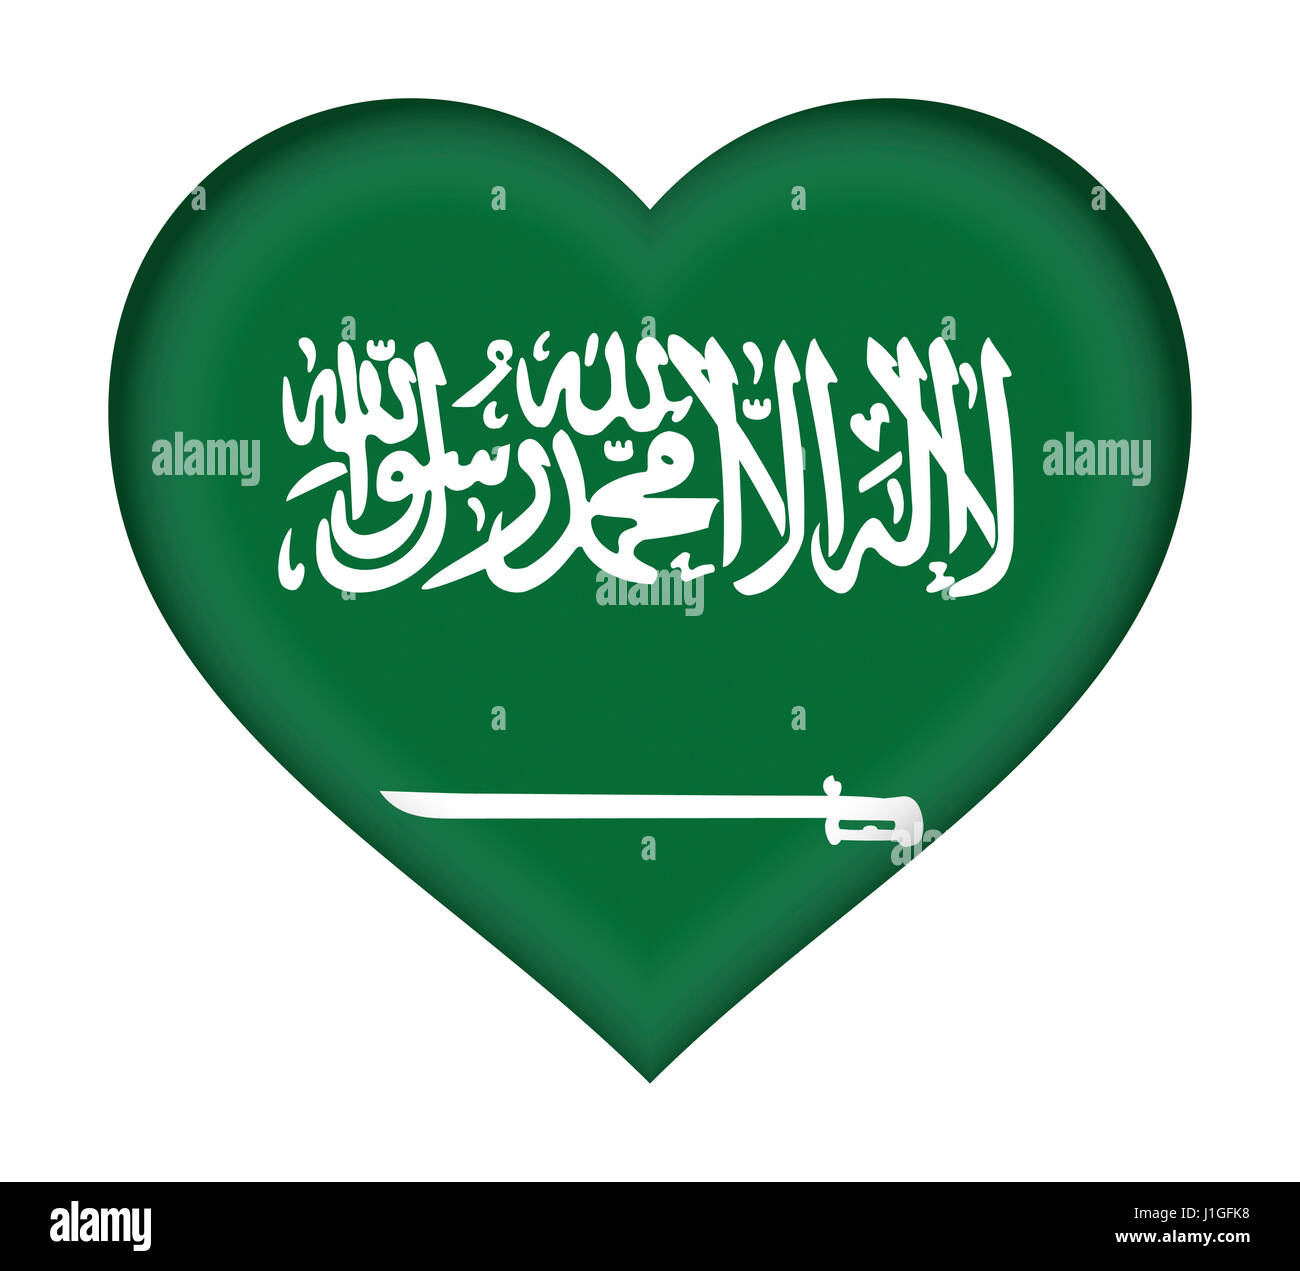 Ilustración de la bandera de Arabia Saudita con forma de corazón. Foto de stock